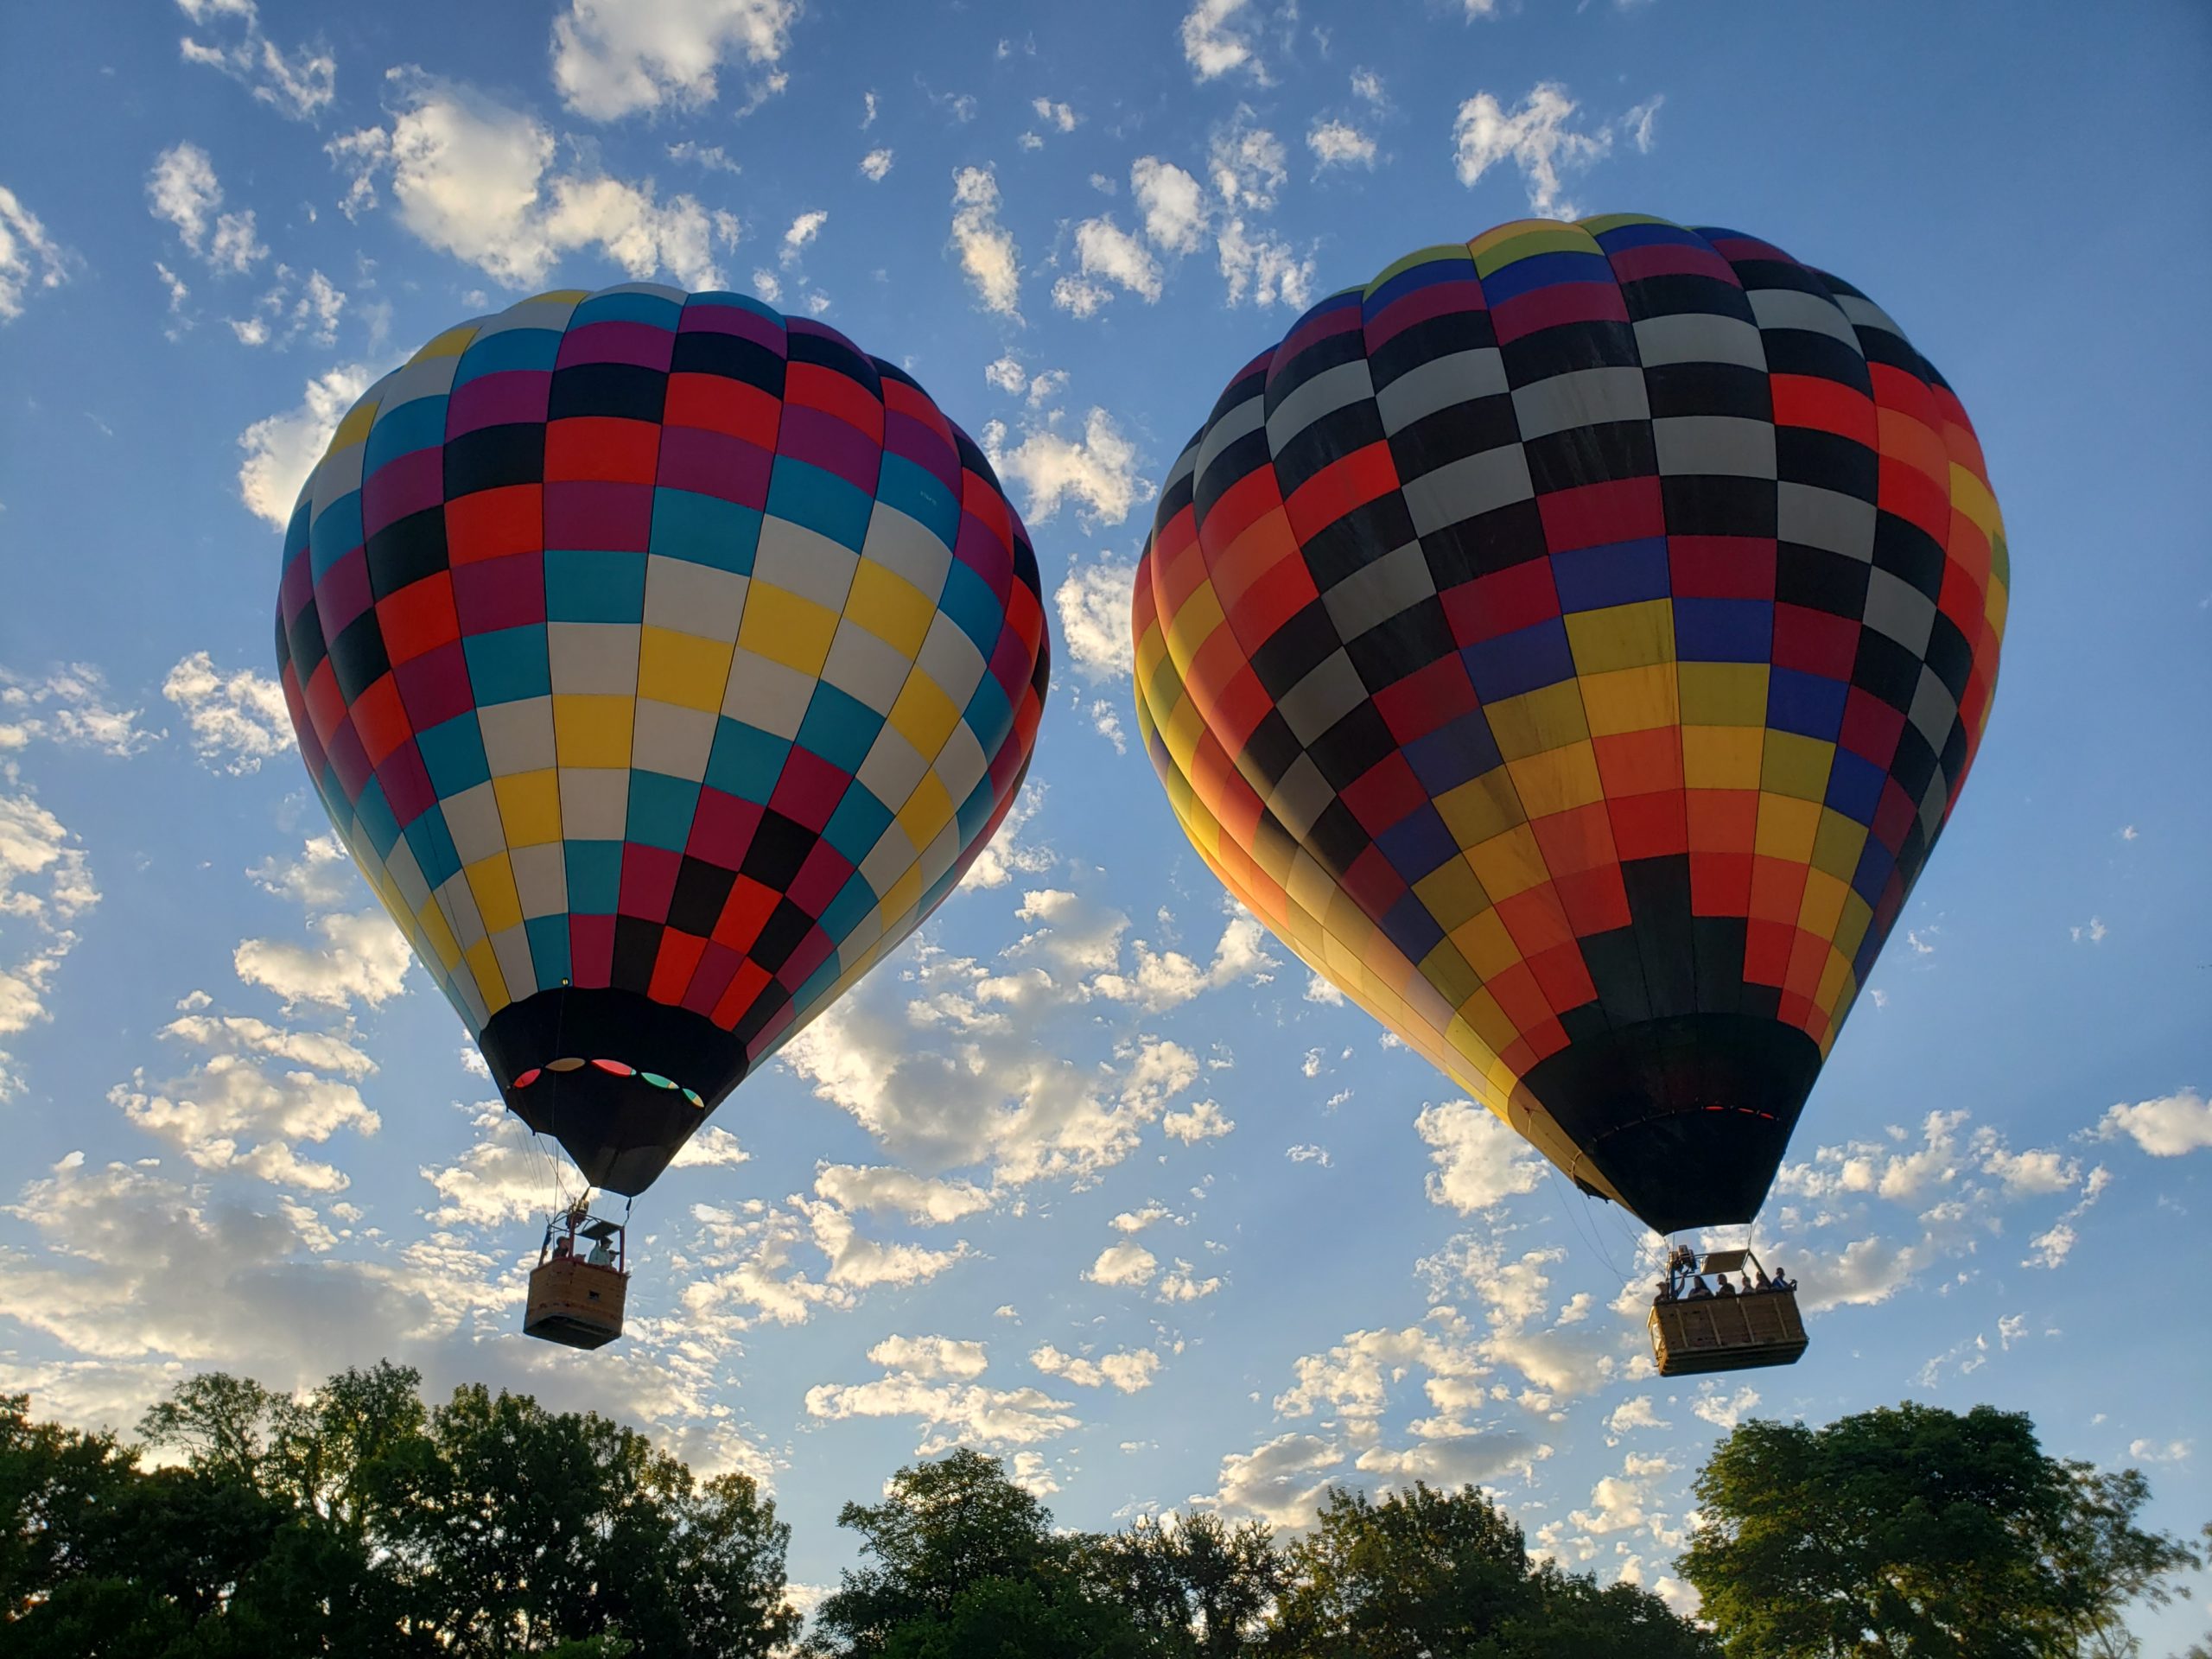 Hot Air Balloon rides over Plano